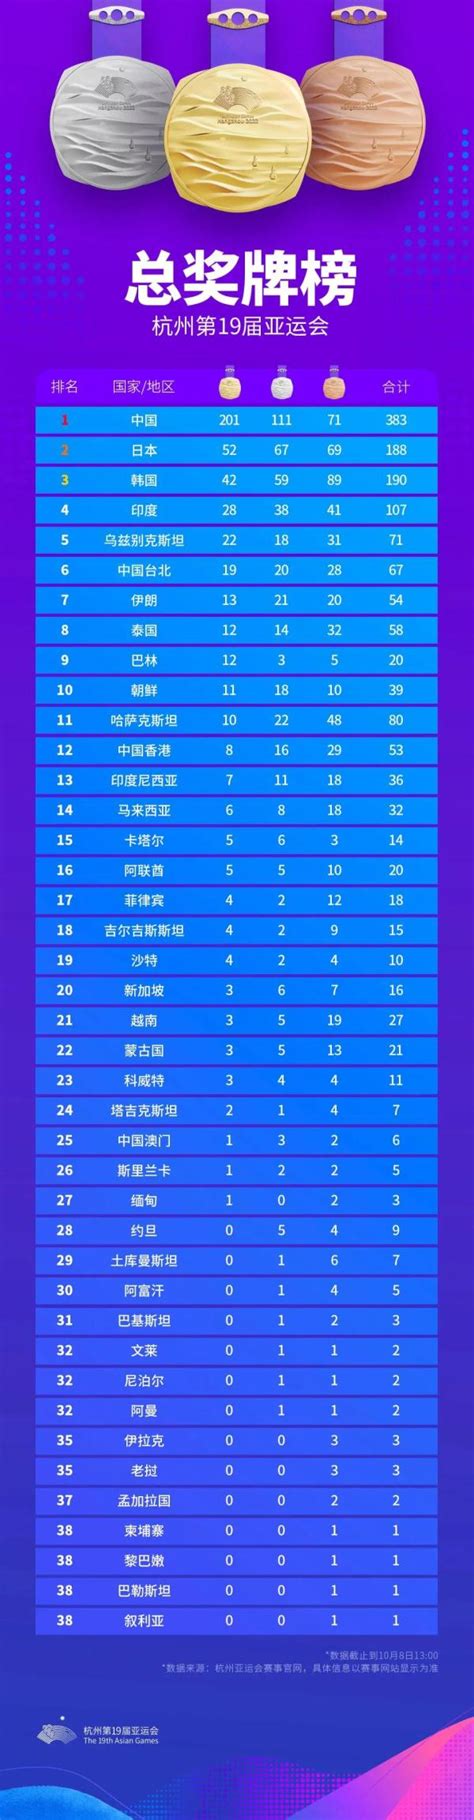 2023杭州亚运会奖牌榜一览 第十九届亚运会中国金牌榜最新_球天下体育